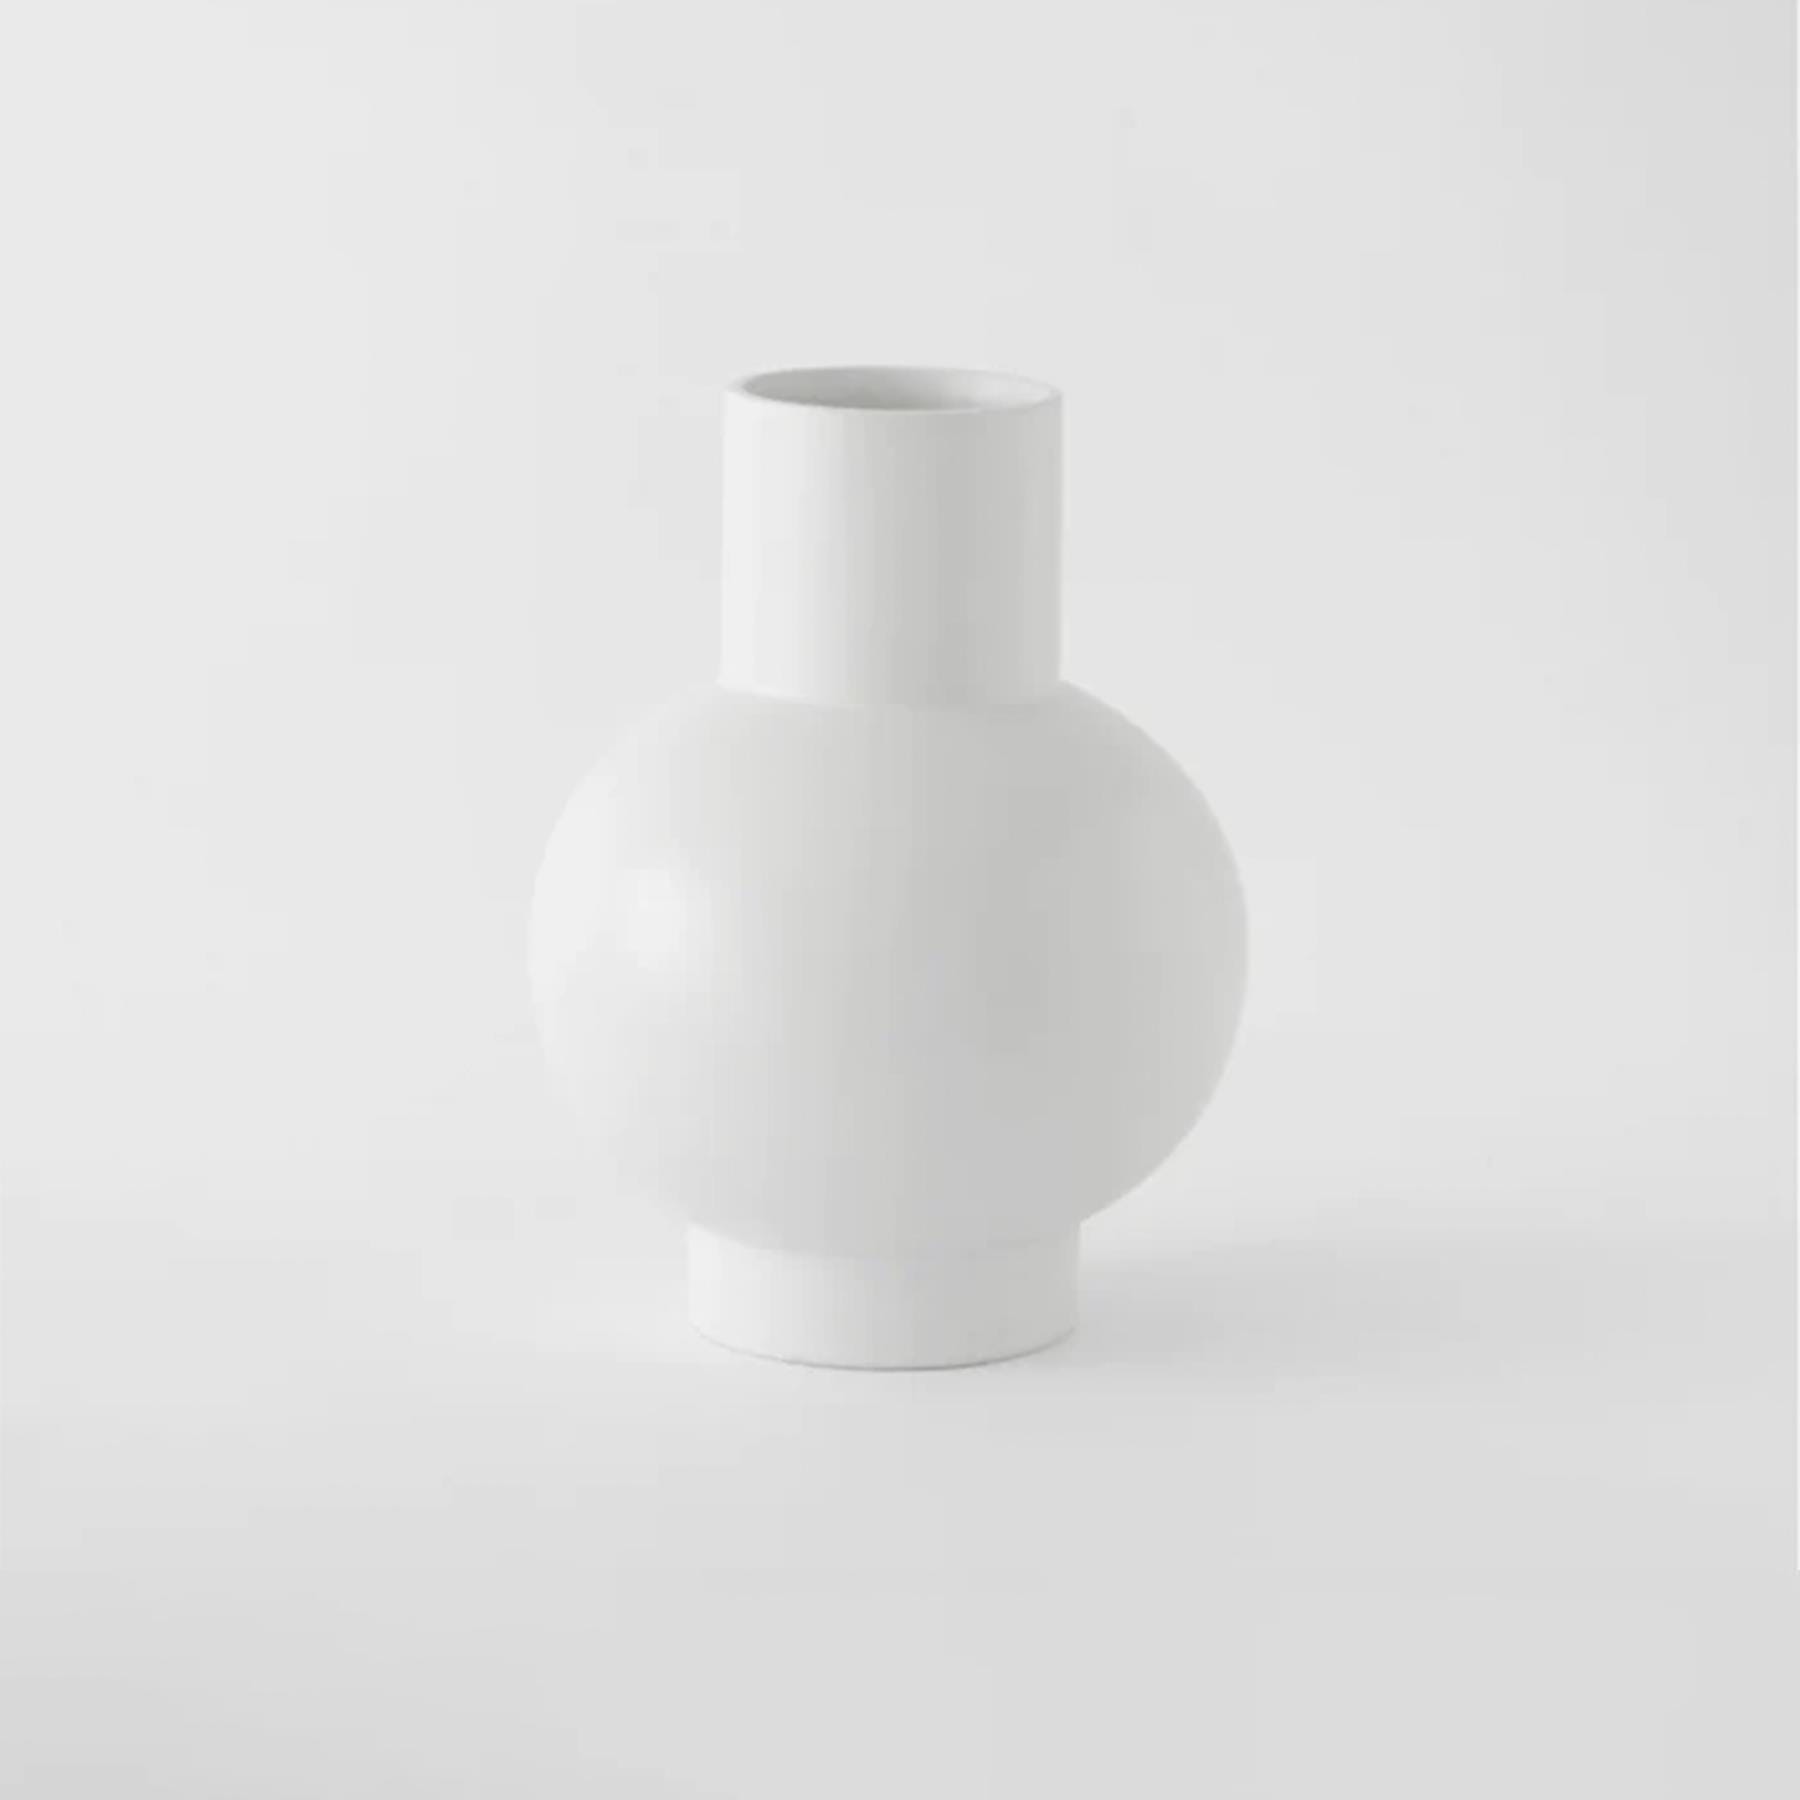 Strom Vase Vaporous Grey Large Earthenware Grey